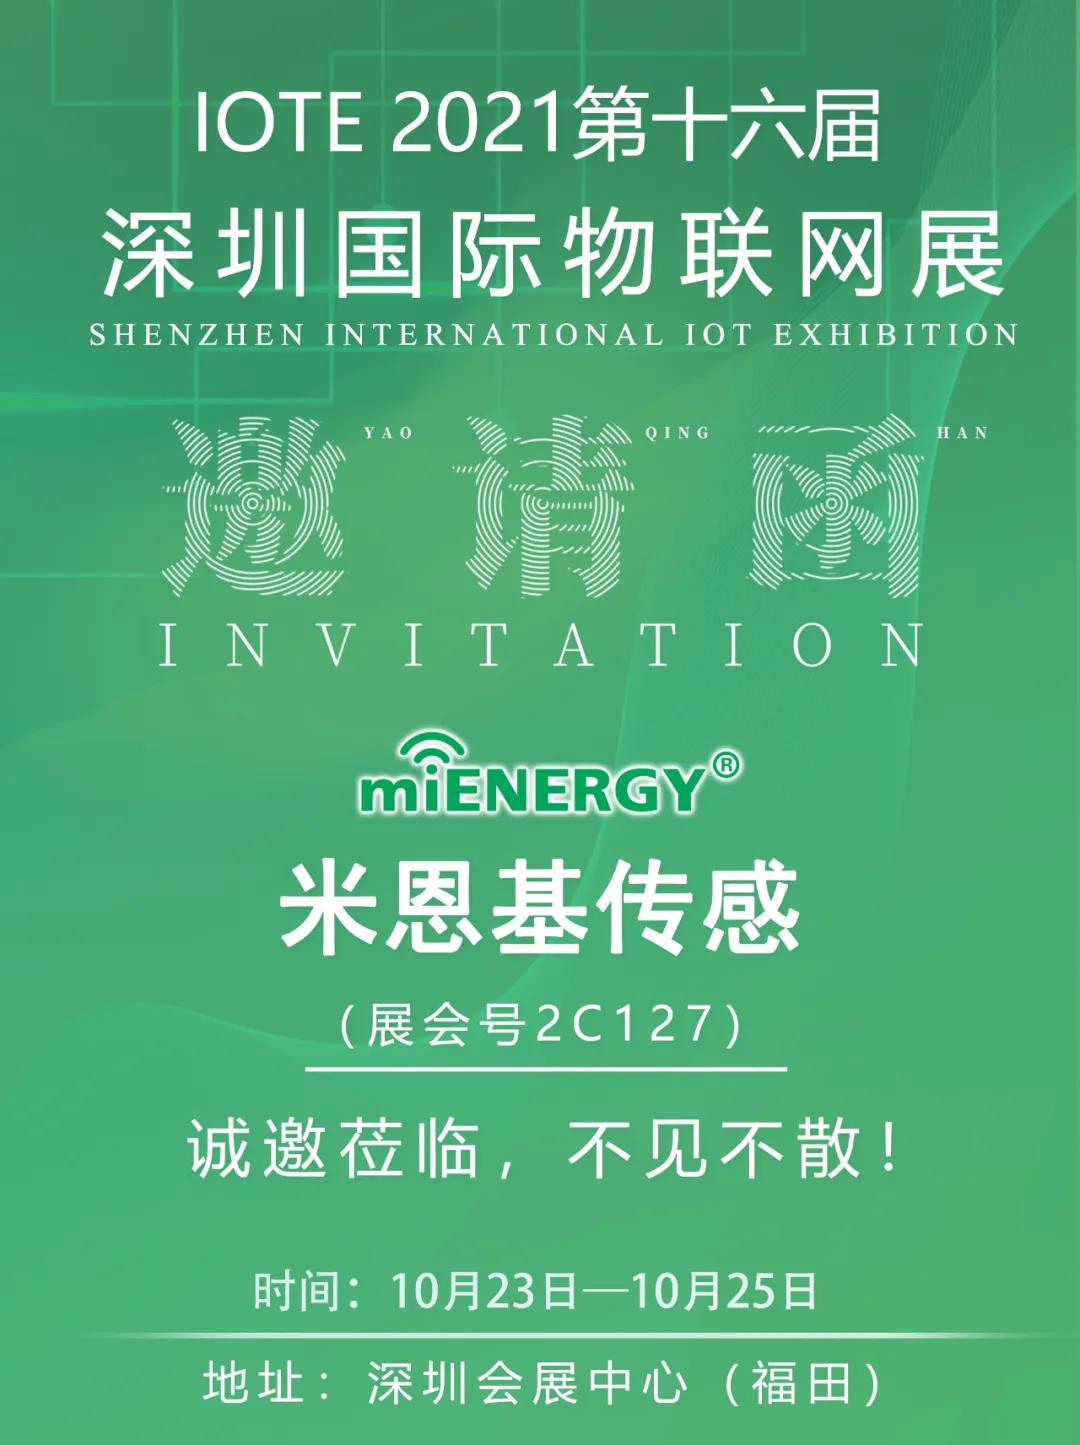 米恩基传感将精彩亮相IOTE2021深圳国际物联网展！